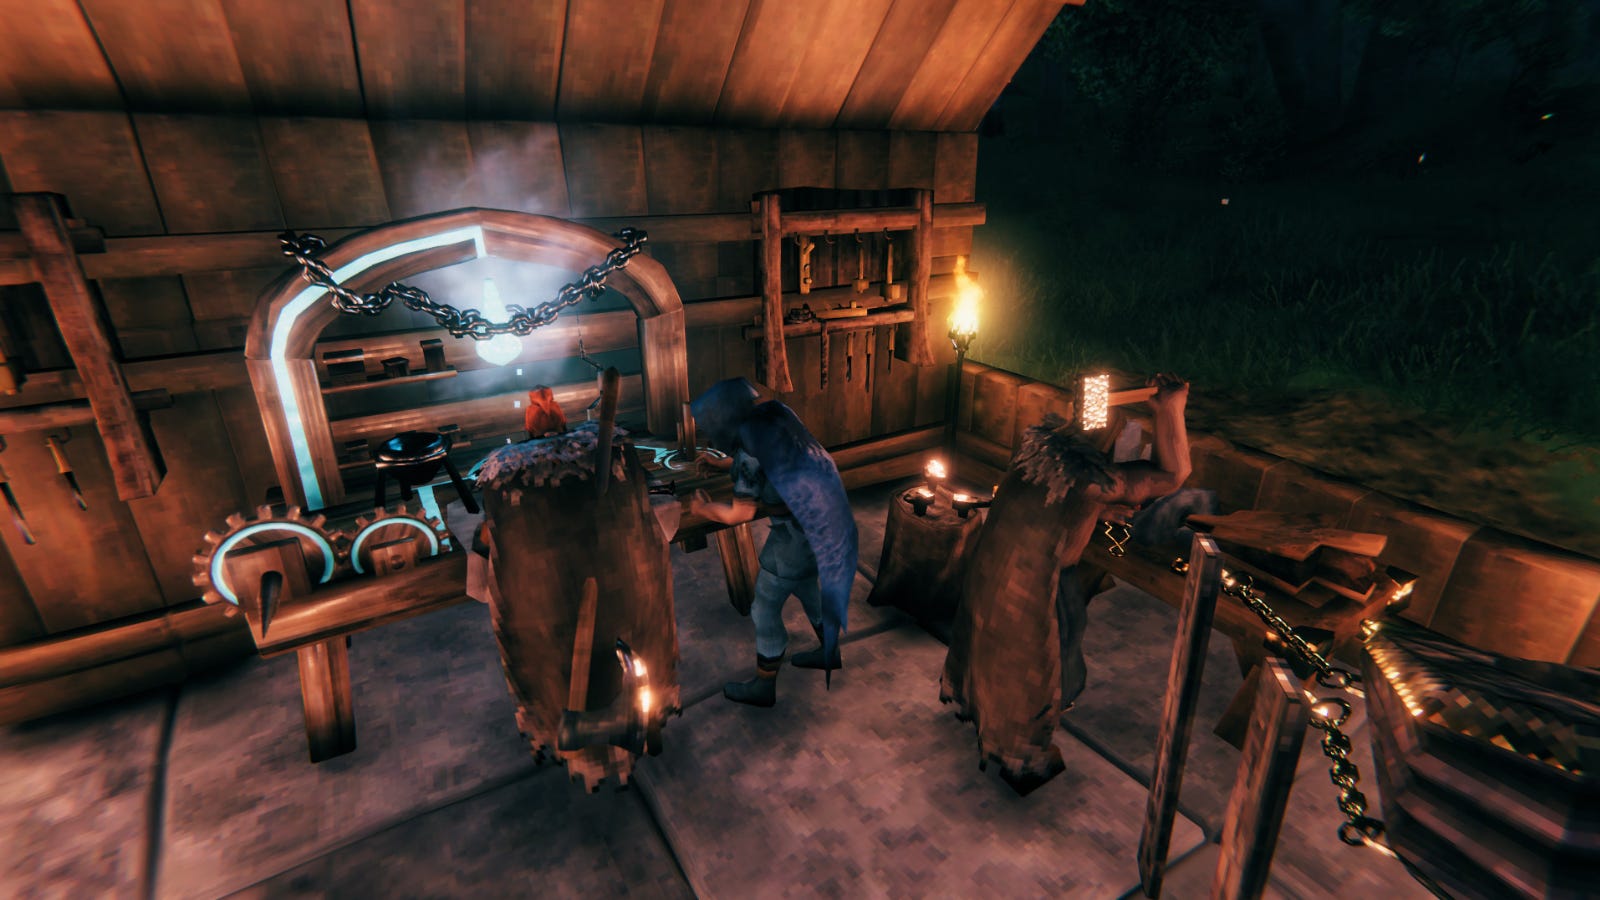 Ba nhân vật người chơi trong 'Valheim' chế tạo các vật phẩm tại các trạm chế tạo khác nhau.